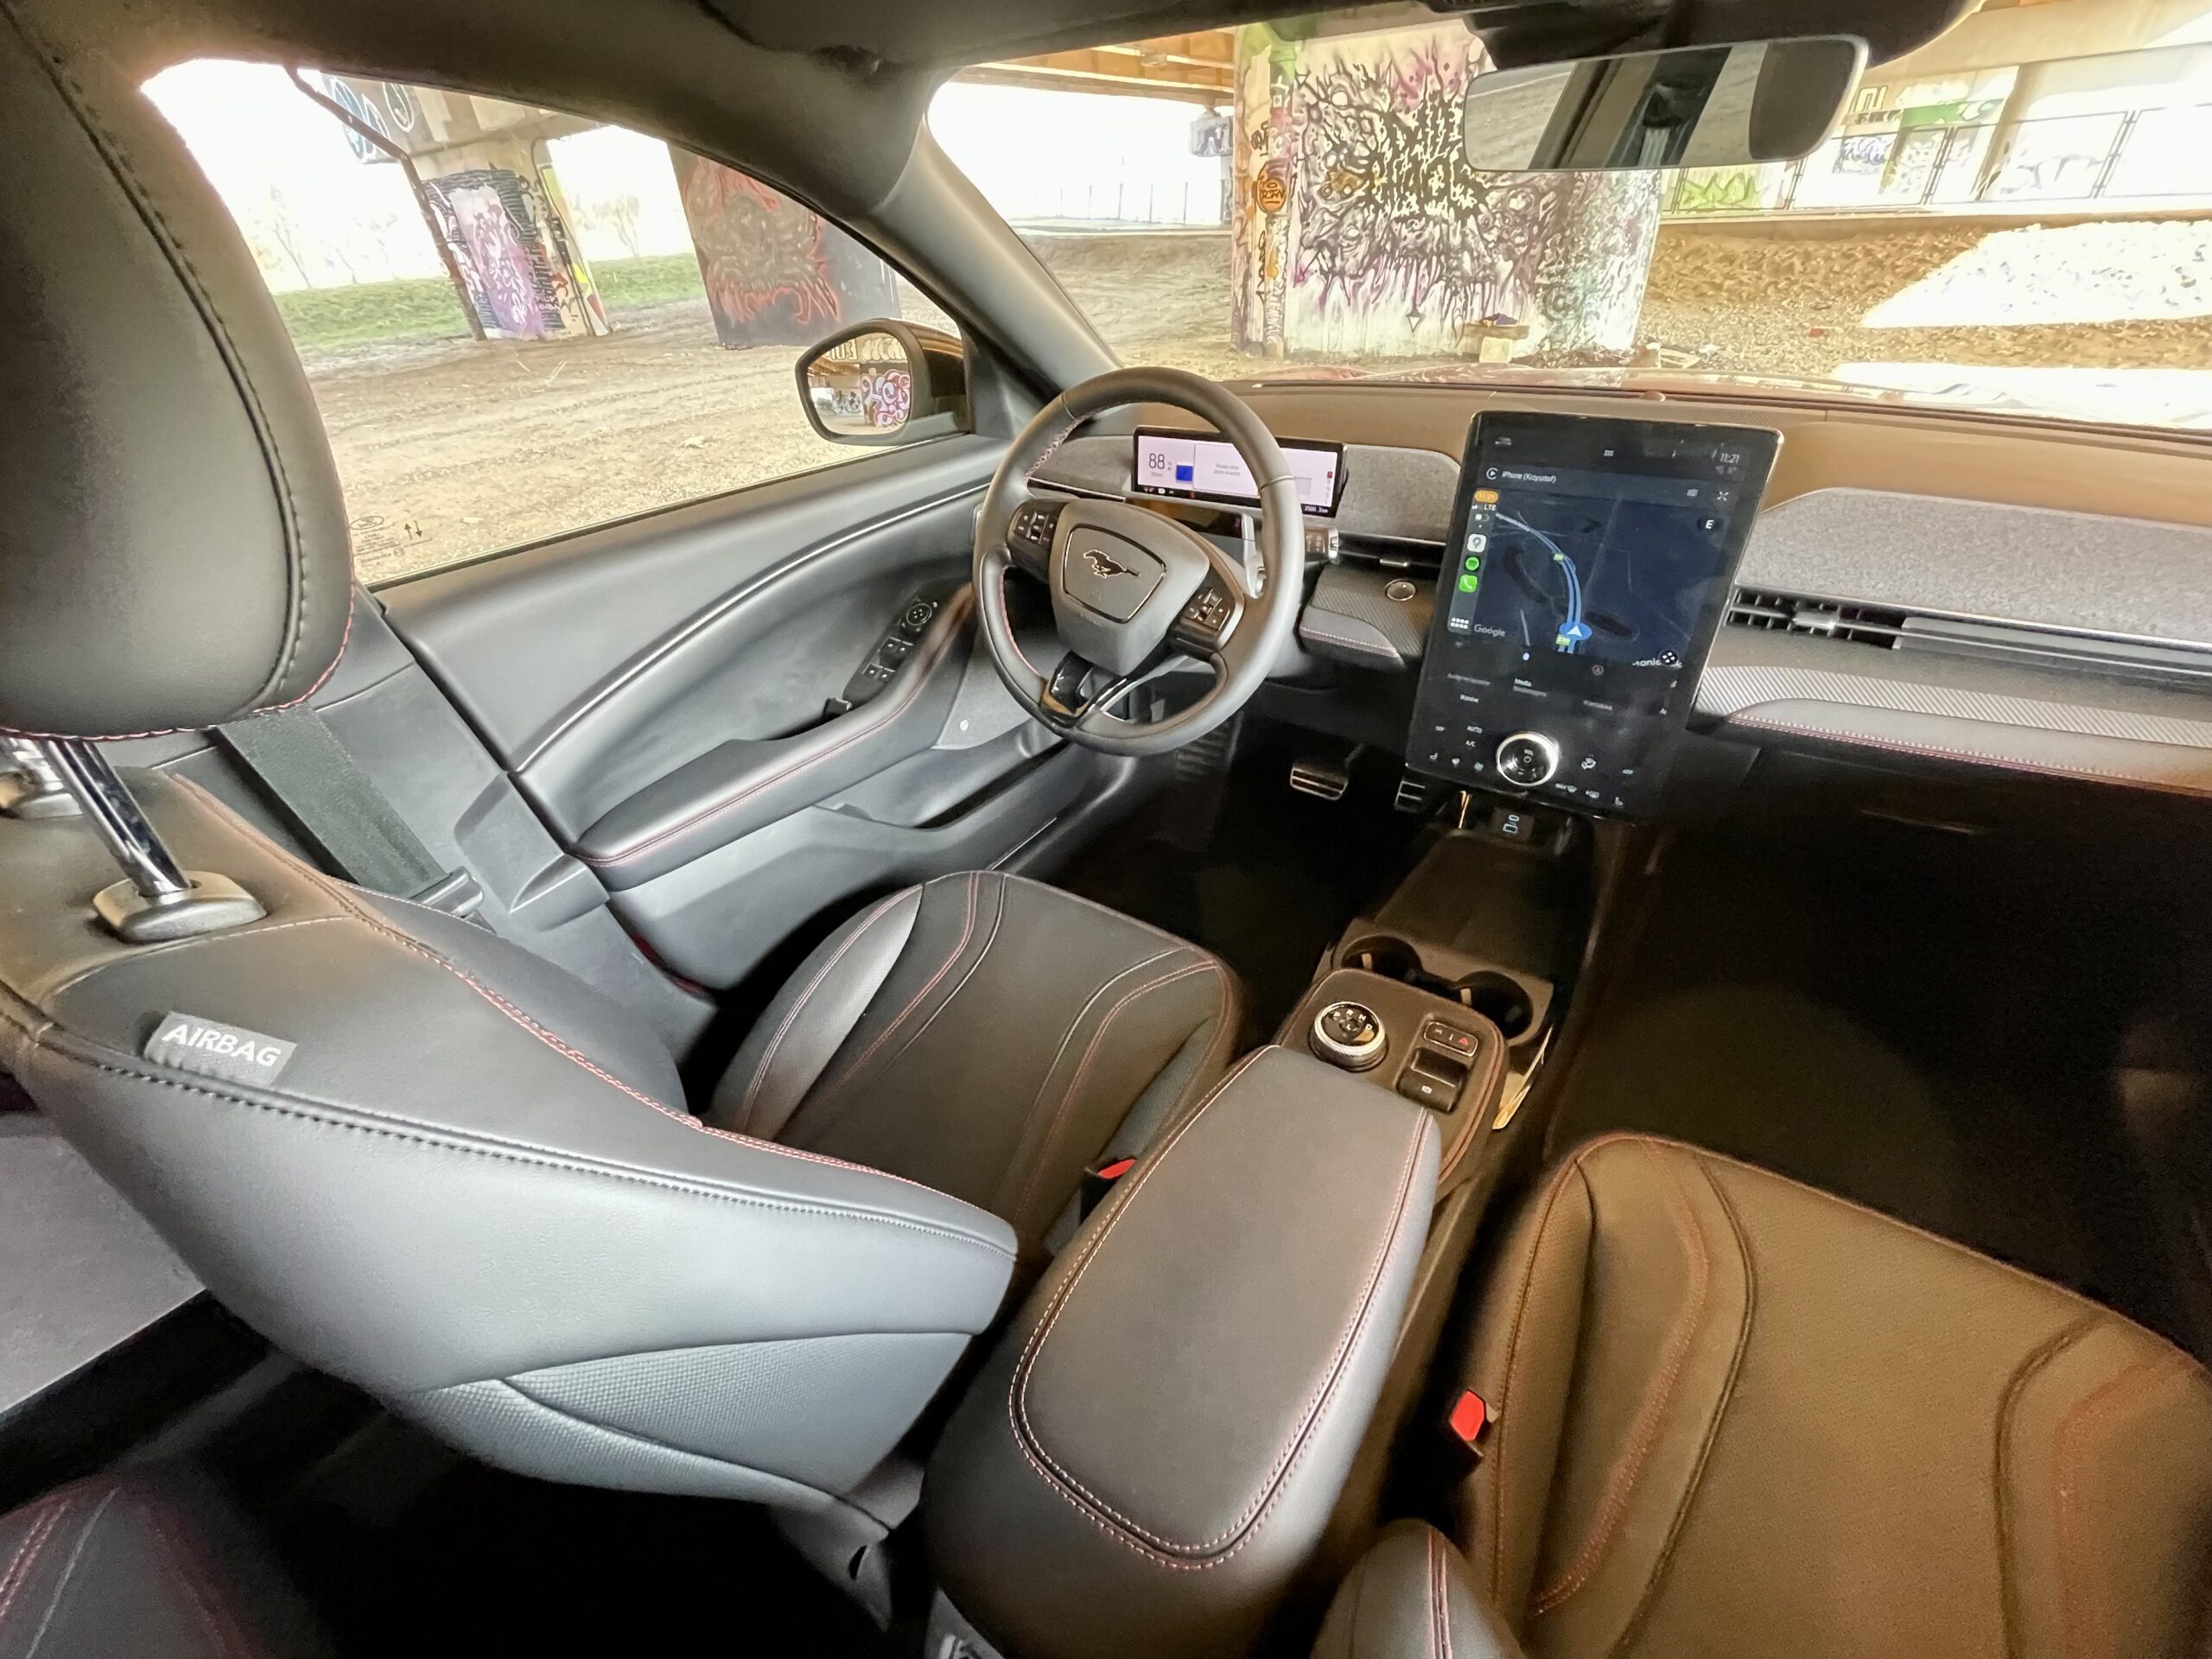 W elektrycznym Mustangu kierowca siedzi wysoko, co zapewnia mu widoczność typową dla SUV'a